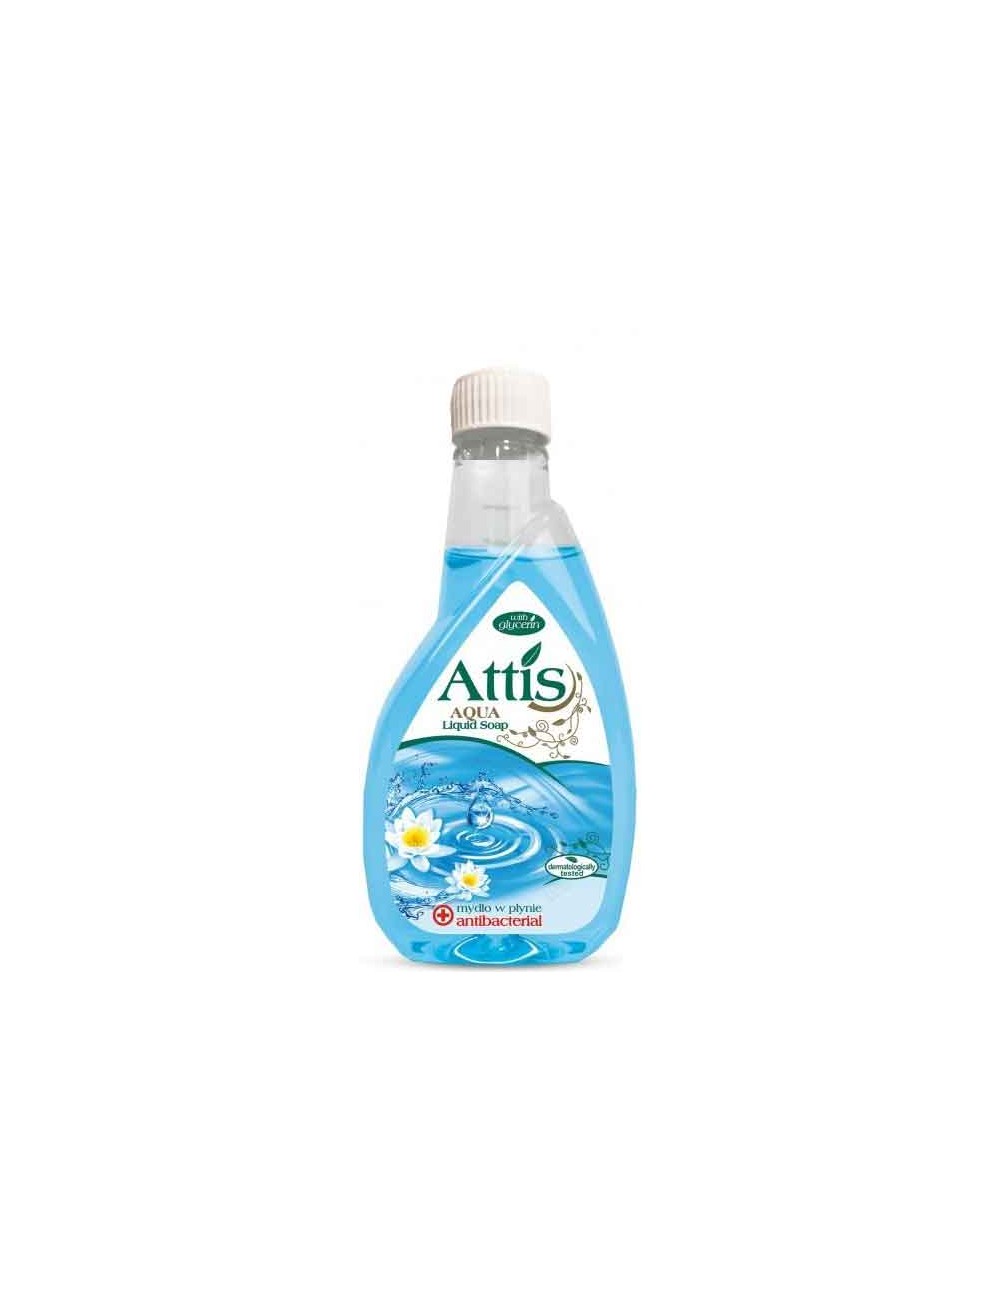 Attis Antybakteryjne Mydło w Płynie Zapas 400 ml - nie wysusza skóry, zawiera glicerynę